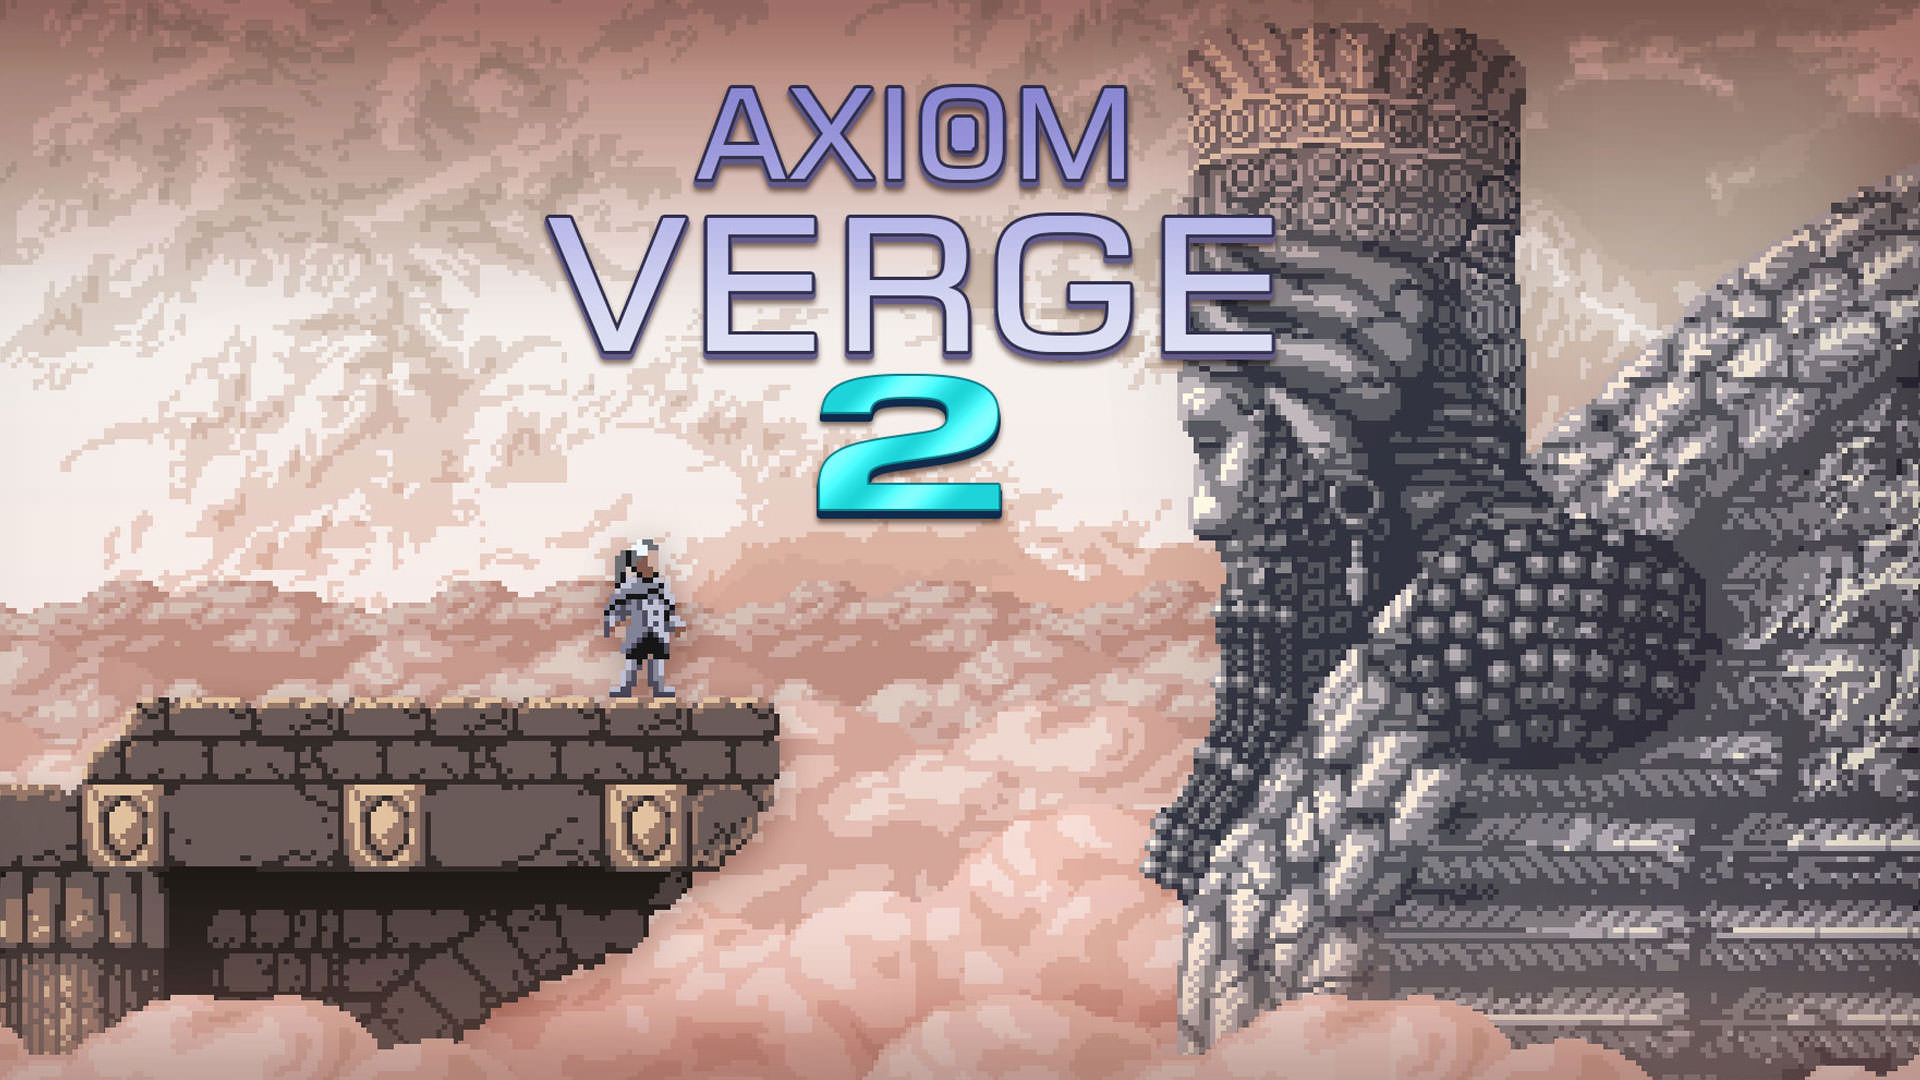 انتشار تریلر جدید Axiom Verge 2؛ اعلام زمان حدودی عرضه بازی